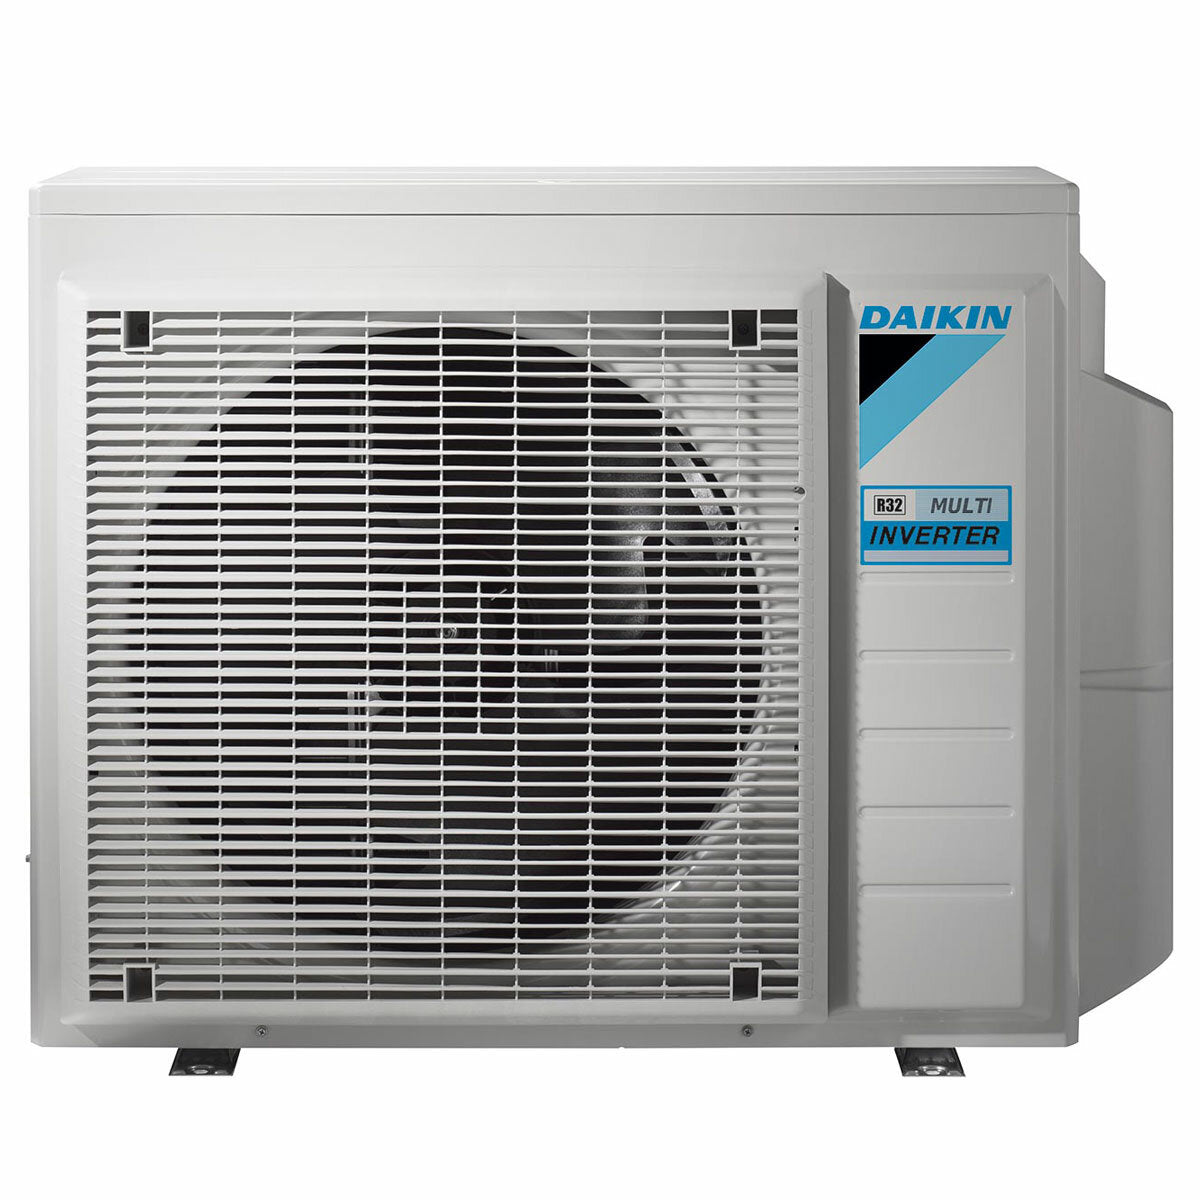 Daikin Emura air conditioner 3 split panels 9000+9000+12000+12000 BTU inverter A++ wifi outdoor unit 7.4 kW White